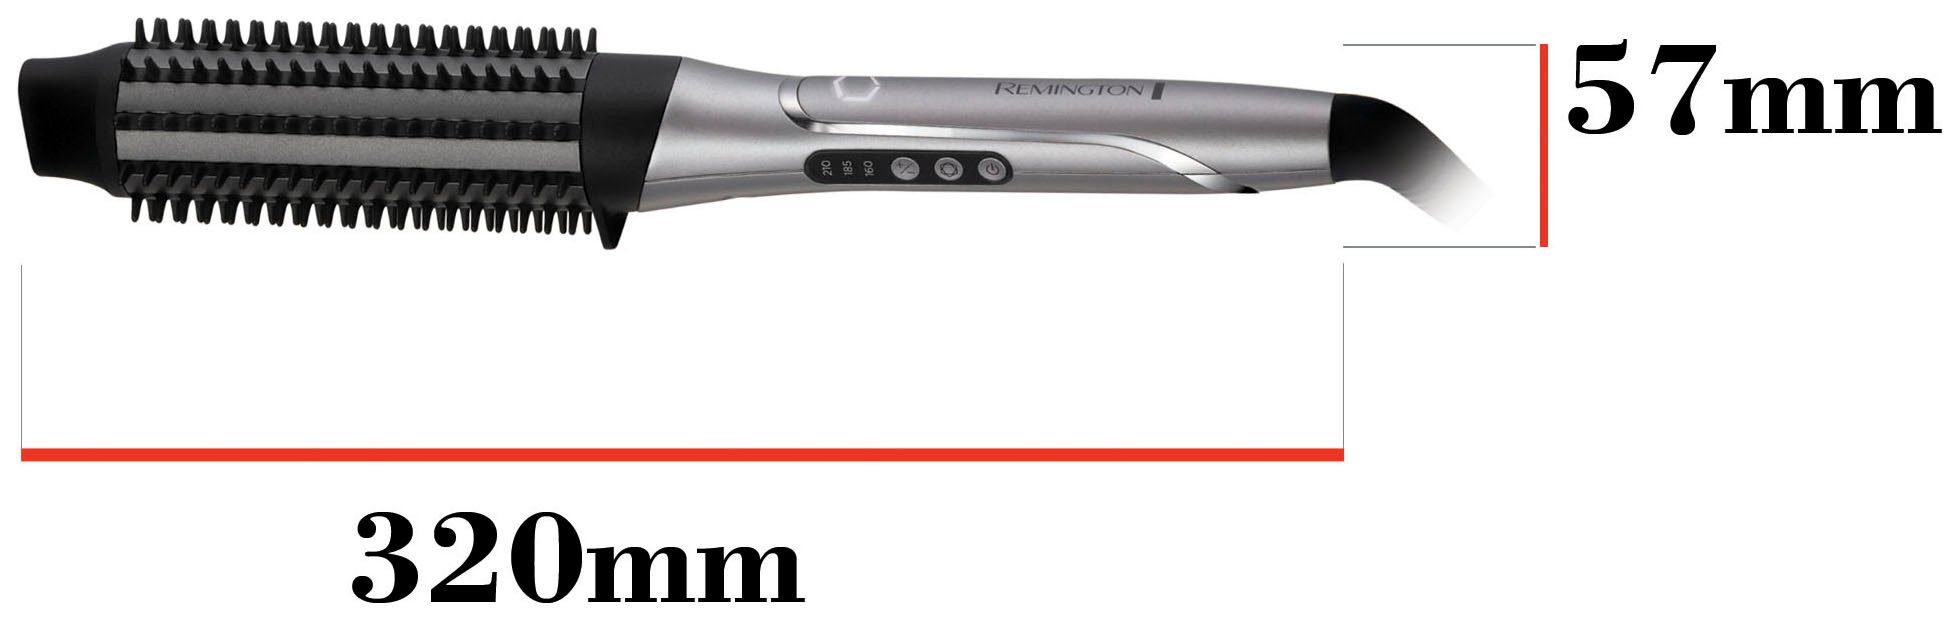 Airstyler/Rund-&Warmluftbürste) PROluxe Remington personalisiert Hitze You Volumenbürste CB9800, Warmluftbürste (lernfähiger